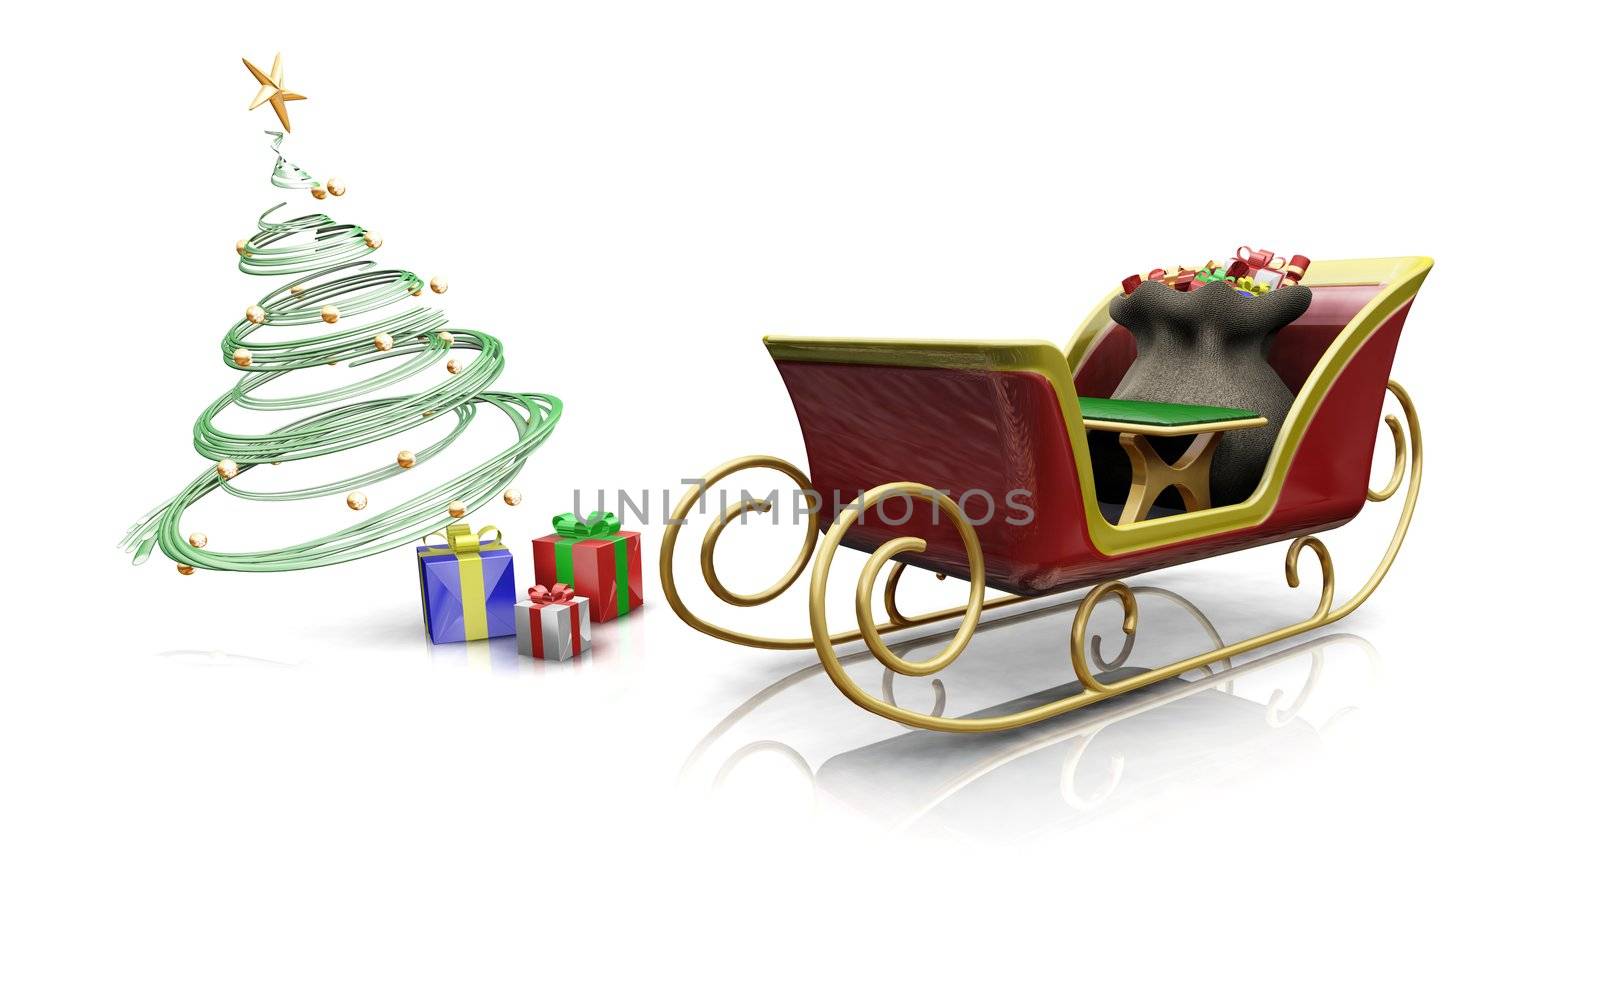 Santas sleigh by kjpargeter